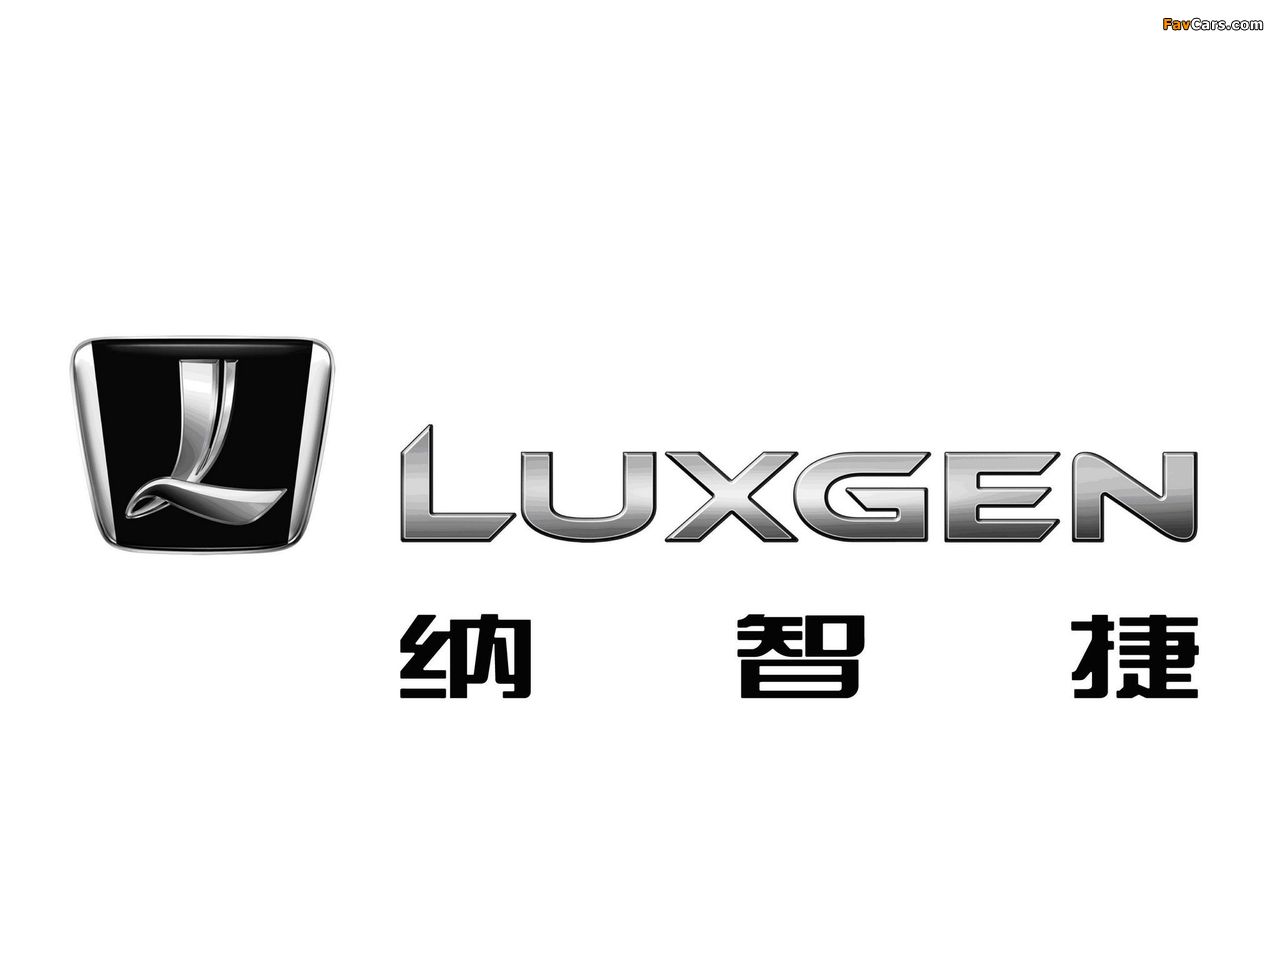 Luxgen images (1280 x 960)